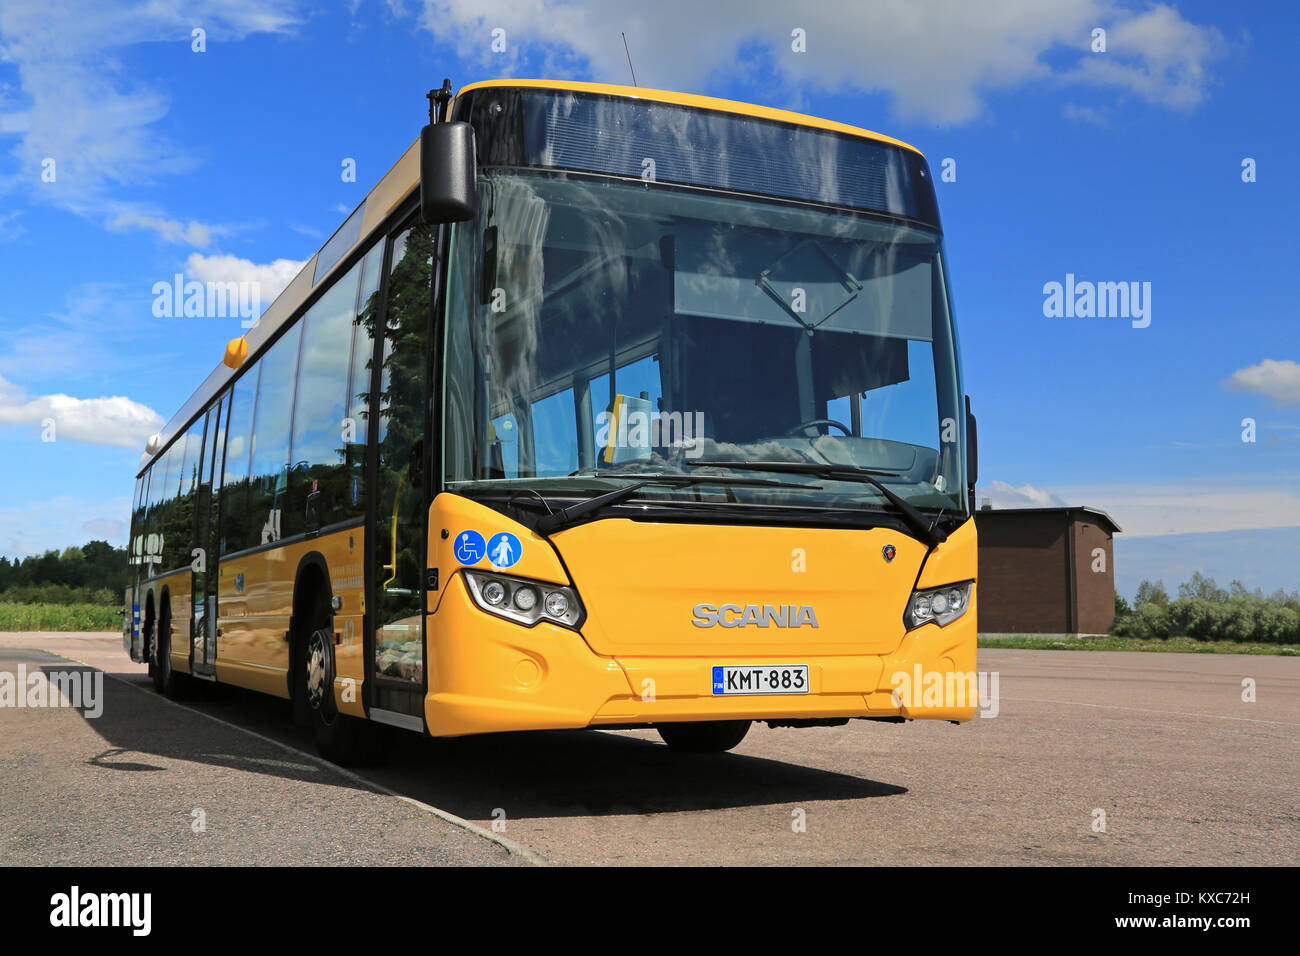 PAIMIO, Finnland - 19 JULI 2014: Gelb Scania in der ganzen Stadt Bus wartet auf Passagiere an einer Bushaltestelle. Scania in der ganzen Stadt ist ein Single-deck Stadt oder Überland Stockfoto